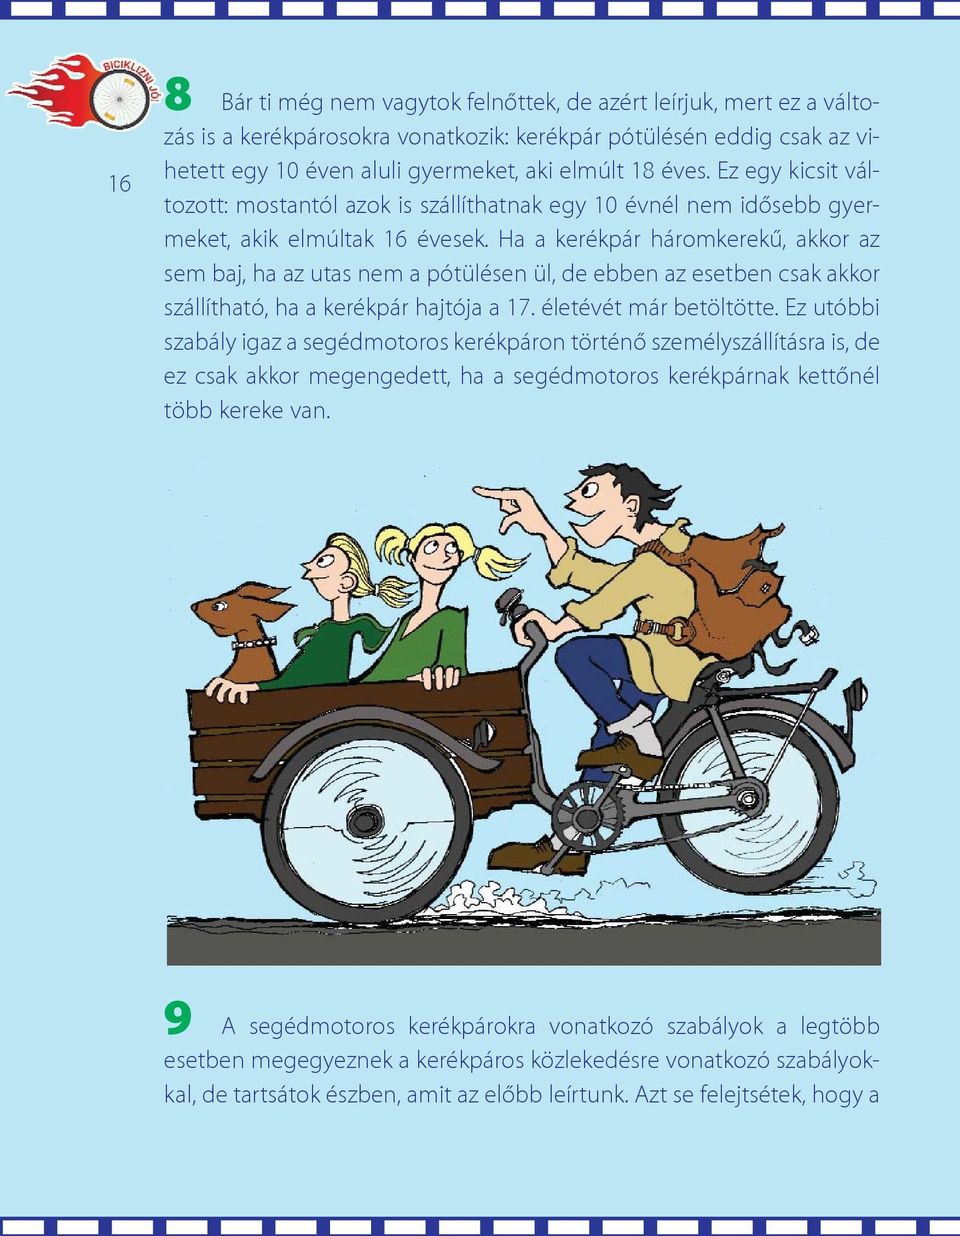 Ha a kerékpár háromkerekû, akkor az sem baj, ha az utas nem a pótülésen ül, de ebben az esetben csak akkor szállítható, ha a kerékpár hajtója a 17. életévét már betöltötte.